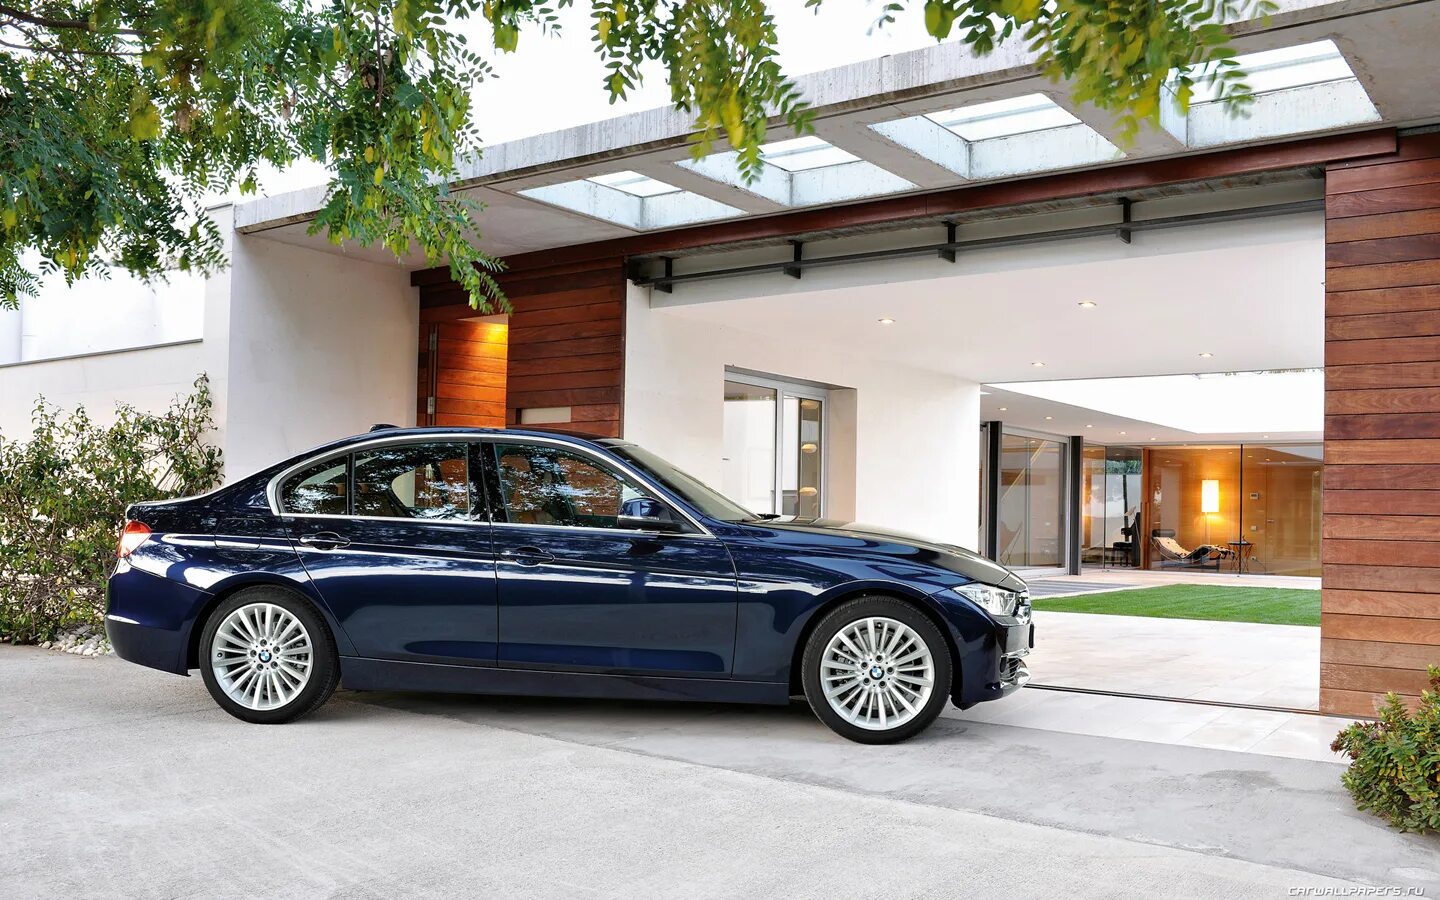 BMW f30 Luxury. BMW f30 Luxury line. BMW 328i f30. BMW f30 328i Luxury line. Luxury line